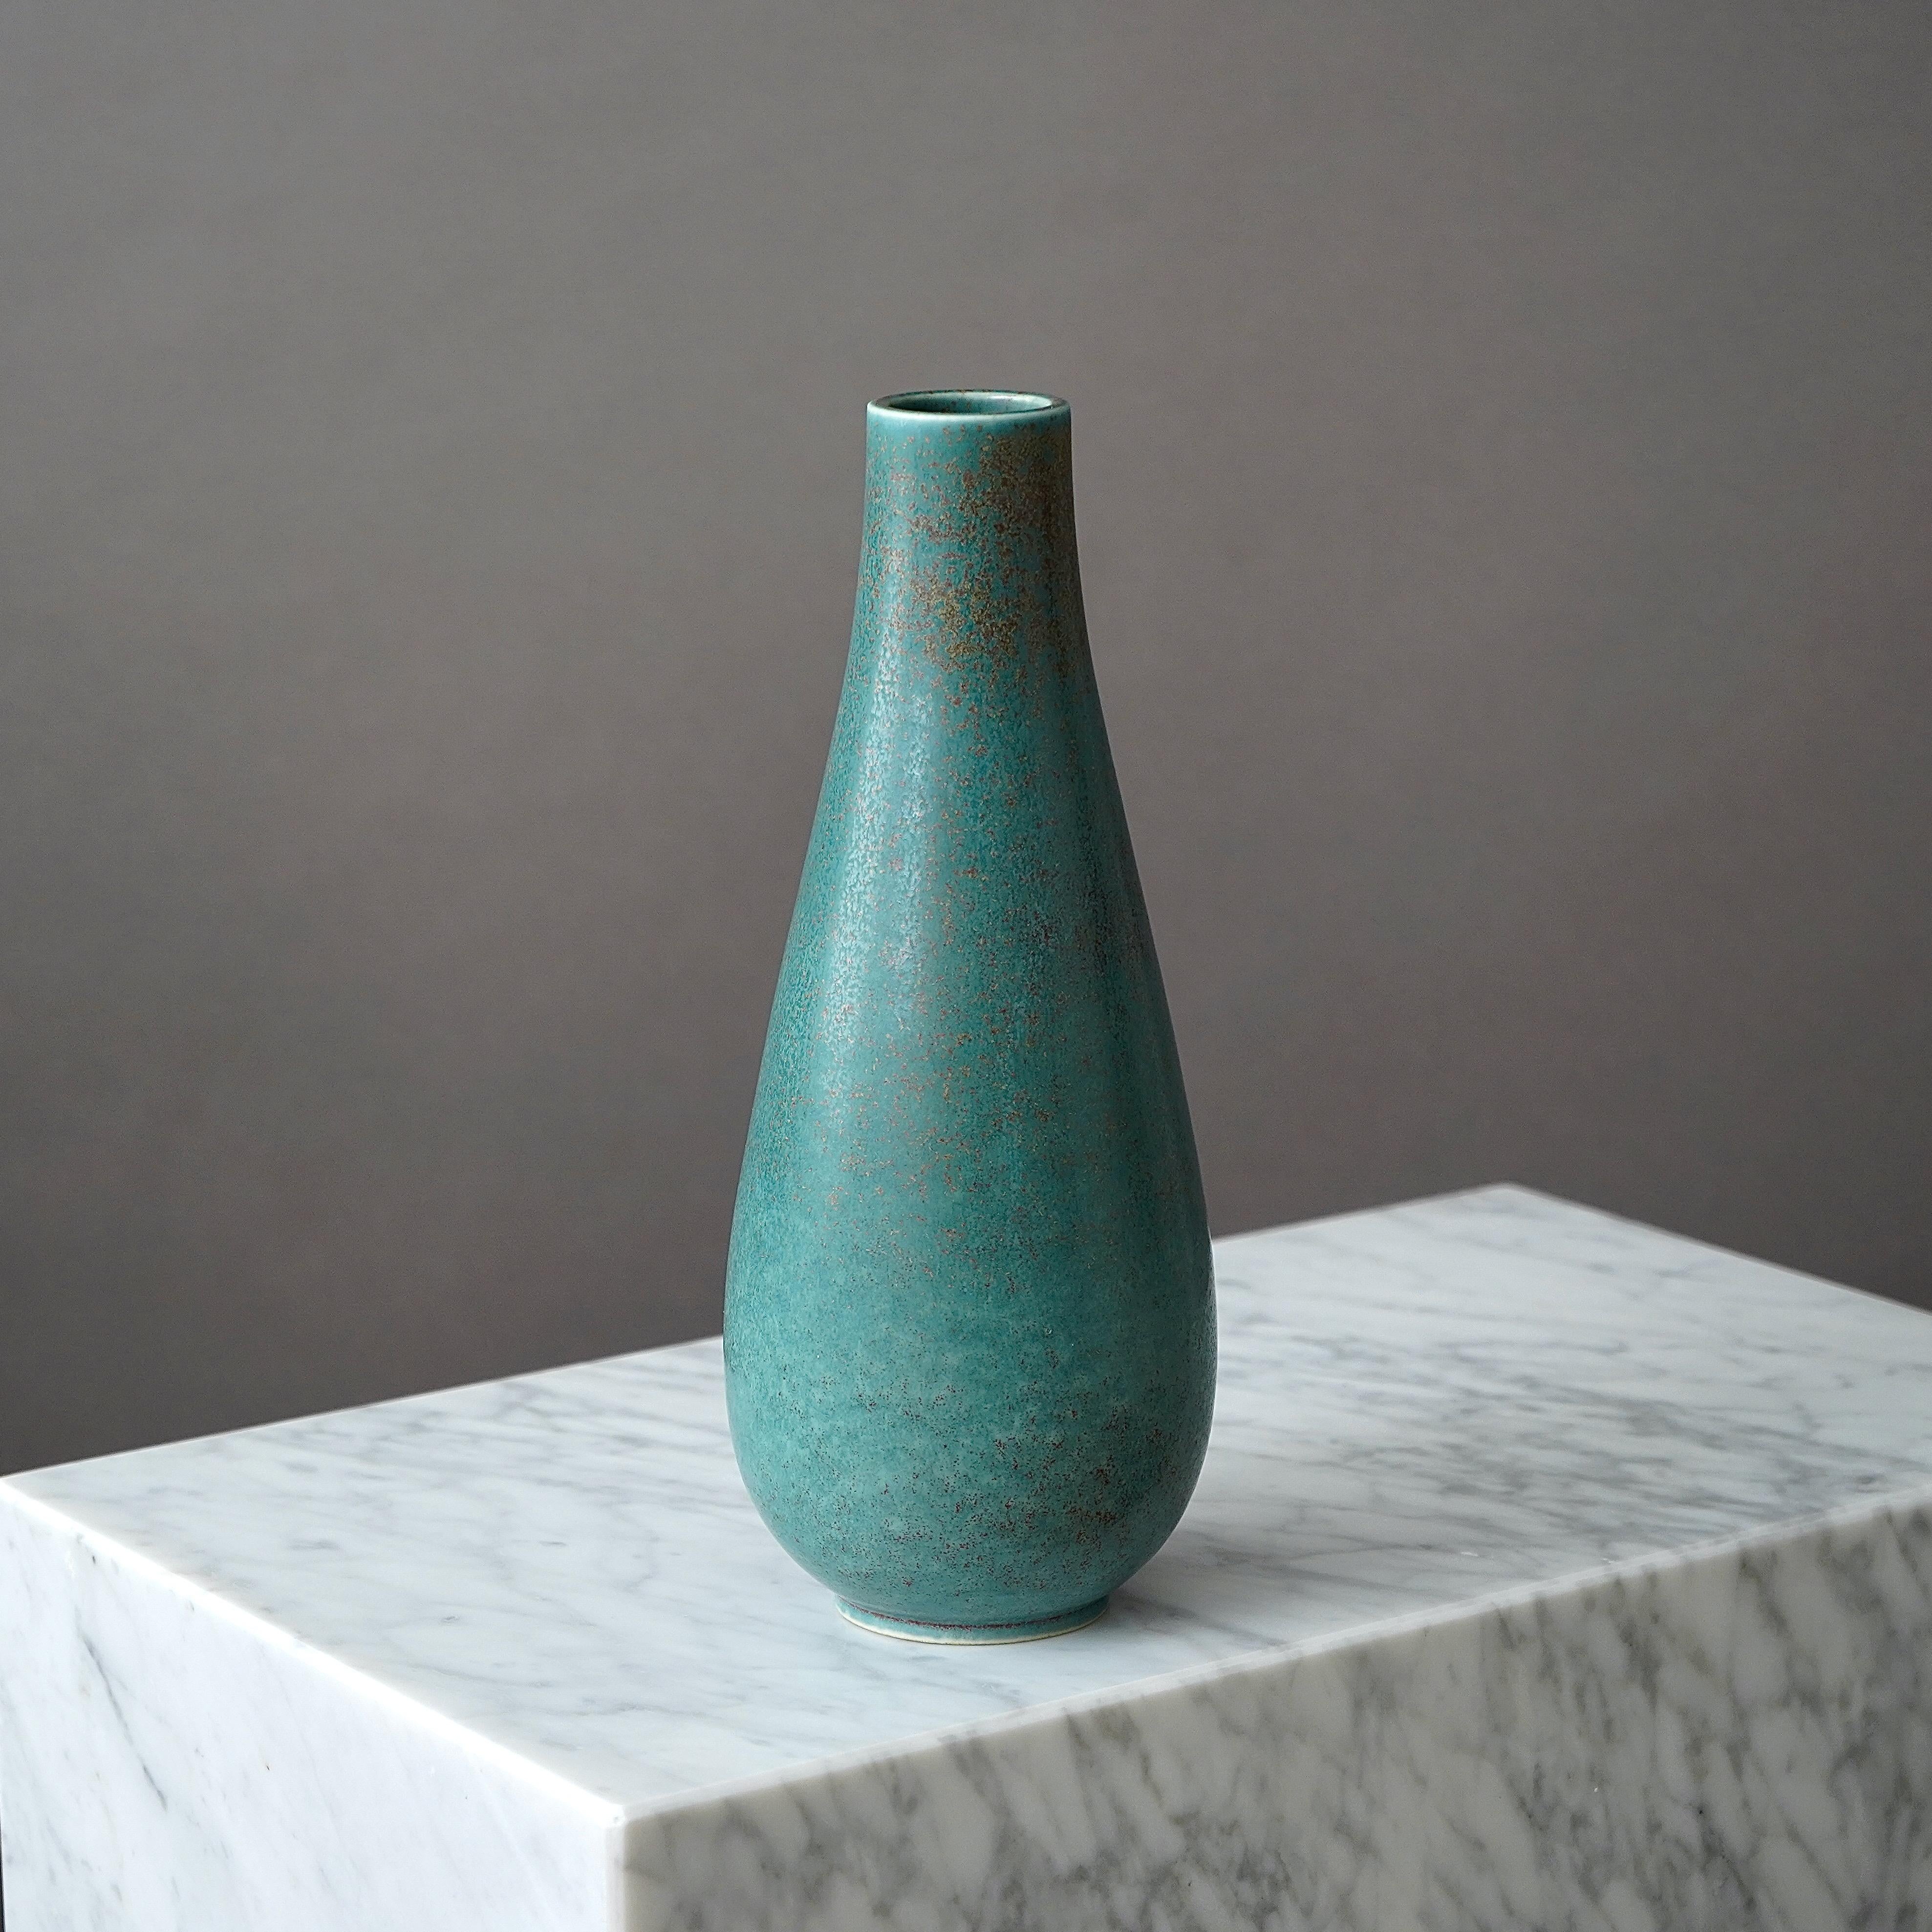 Eine schöne Vase aus Steingut mit toller Glasur. 
Entworfen von Gunnar Nylund für Rorstrand, Schweden, 1950er Jahre.  

Ausgezeichneter Zustand. Eingeschnittene Signatur 